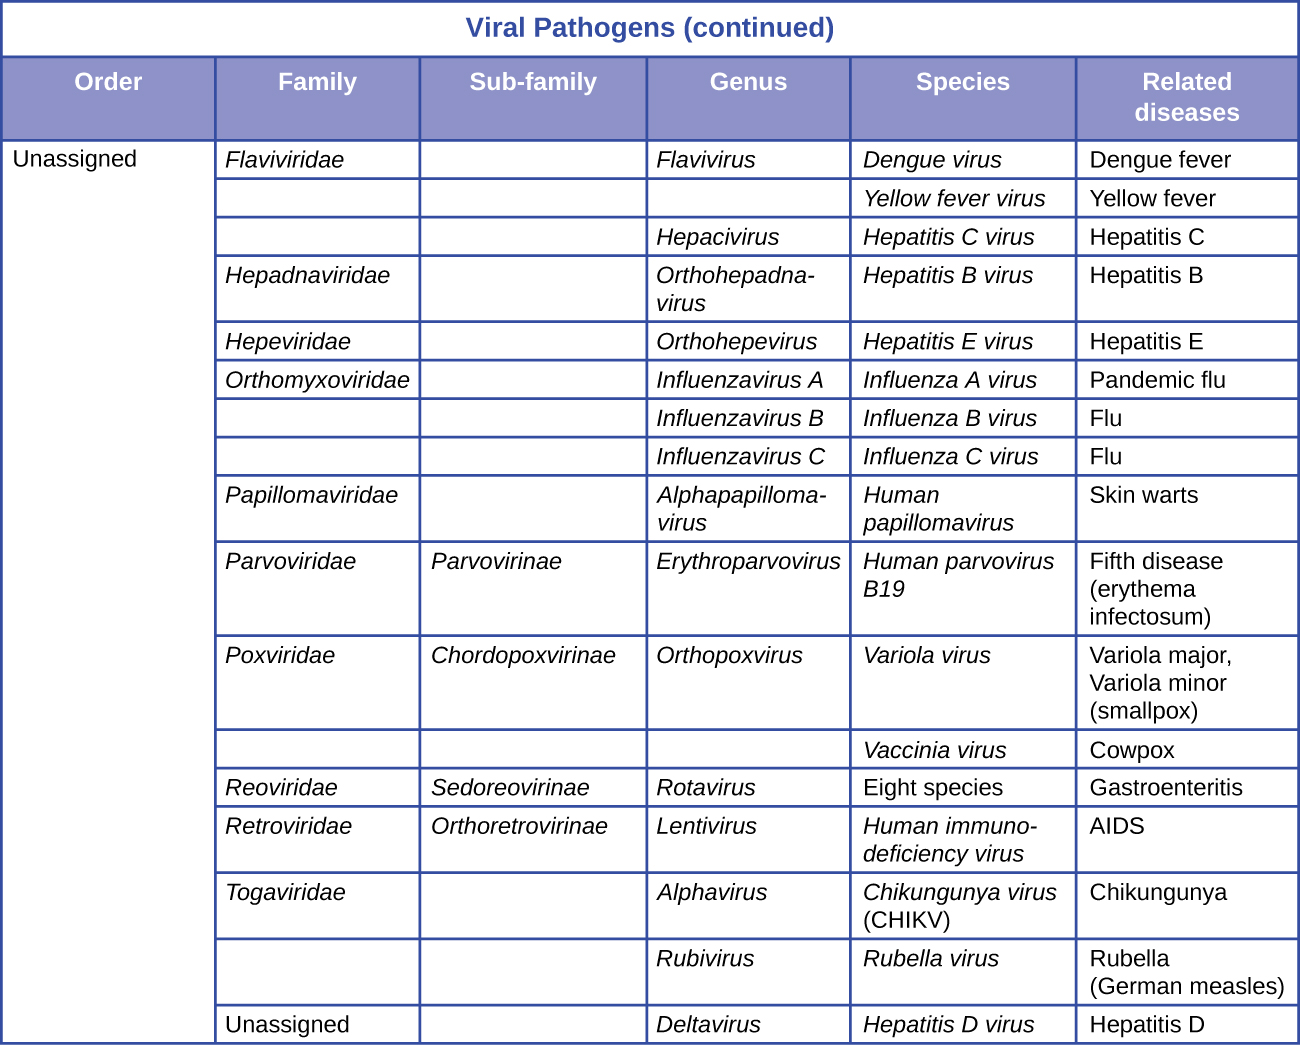 Un tableau intitulé « Agents pathogènes viraux (suite) » donne des informations sur l'ordre, la famille, la sous-famille, le genre, l'espèce et les maladies connexes. Toutes les entrées de ce tableau ne sont pas attribuées dans la catégorie d'ordre. Pour la famille des flaviviriadae, le genre flavivirus, l'espèce virus de la dengue, la maladie apparentée est la dengue. Pour la famille des flaviviriadae, le genre flavivirus, l'espèce virus de la fièvre jaune, la maladie apparentée est la fièvre jaune. Dans la famille des flaviviriadae, genre hépacivirus, espèce virus de l'hépatite C, la maladie apparentée est l'hépatite C. Pour la famille des hepadnaviridae, genre orthohepadnavirus, espèce virus de l'hépatite B, la maladie apparentée est l'hépatite B. Pour la famille des Hepeviridae, genre orthohepevirus, espèce virus de l'hépatite E, maladie apparentée est l'hépatite E. Pour la famille des orthomyxoviridae, le genre influenzavirus A, l'espèce virus grippal A, la maladie apparentée est la grippe pandémique. Pour la famille des orthomyxoviridae, le genre influenzavirus B, l'espèce virus grippal B, la maladie apparentée est la grippe. Pour la famille des orthomyxoviridae, le genre influenzavirus C, l'espèce virus de la grippe C, la maladie apparentée est la grippe. Pour la famille des papillomaviridae, le genre alphapapillomavirus, l'espèce papillomavirus humain, la maladie apparentée est les verrues cutanées. Pour la famille des parvoviridae, la sous-famille des parvovirinae, le genre erythroparvovirus, l'espèce parvovirus humain B 19, la maladie apparentée est la cinquième maladie (érythème infectosum). Pour la famille des poxviridae, la sous-famille des chordopoxvirinae, le genre orthopoxvirus et l'espèce variolique, les maladies associées sont la variole majeure et la variole mineure (variole). Pour la famille des poxviridae, la sous-famille des chordopoxvirinae, le genre orthopoxvirus, l'espèce vaccinia virus, la maladie apparentée est la varicelle. Pour la famille des reoviridae, la sous-famille des sédoréovirinae, le genre rotavirus, les espèces 8, la maladie apparentée est la gastro-entérite. Pour la famille des rétroviridae, la sous-famille des orthorétrovirinae, le genre lentivirus, l'espèce du virus de l'immunodéficience humaine, la maladie apparentée est le sida. Pour la famille des togaviridae, le genre alphavirus, l'espèce du virus du chikungunya (CHIKV), la maladie apparentée est le chikungunya. Pour la famille des togaviridae, le genre rubivirus, l'espèce rubéole, la maladie apparentée est la rubéole (rougeole allemande). Pour un ordre non attribué, genre deltavirus, espèce virus de l'hépatite D, la maladie associée est l'hépatite D.